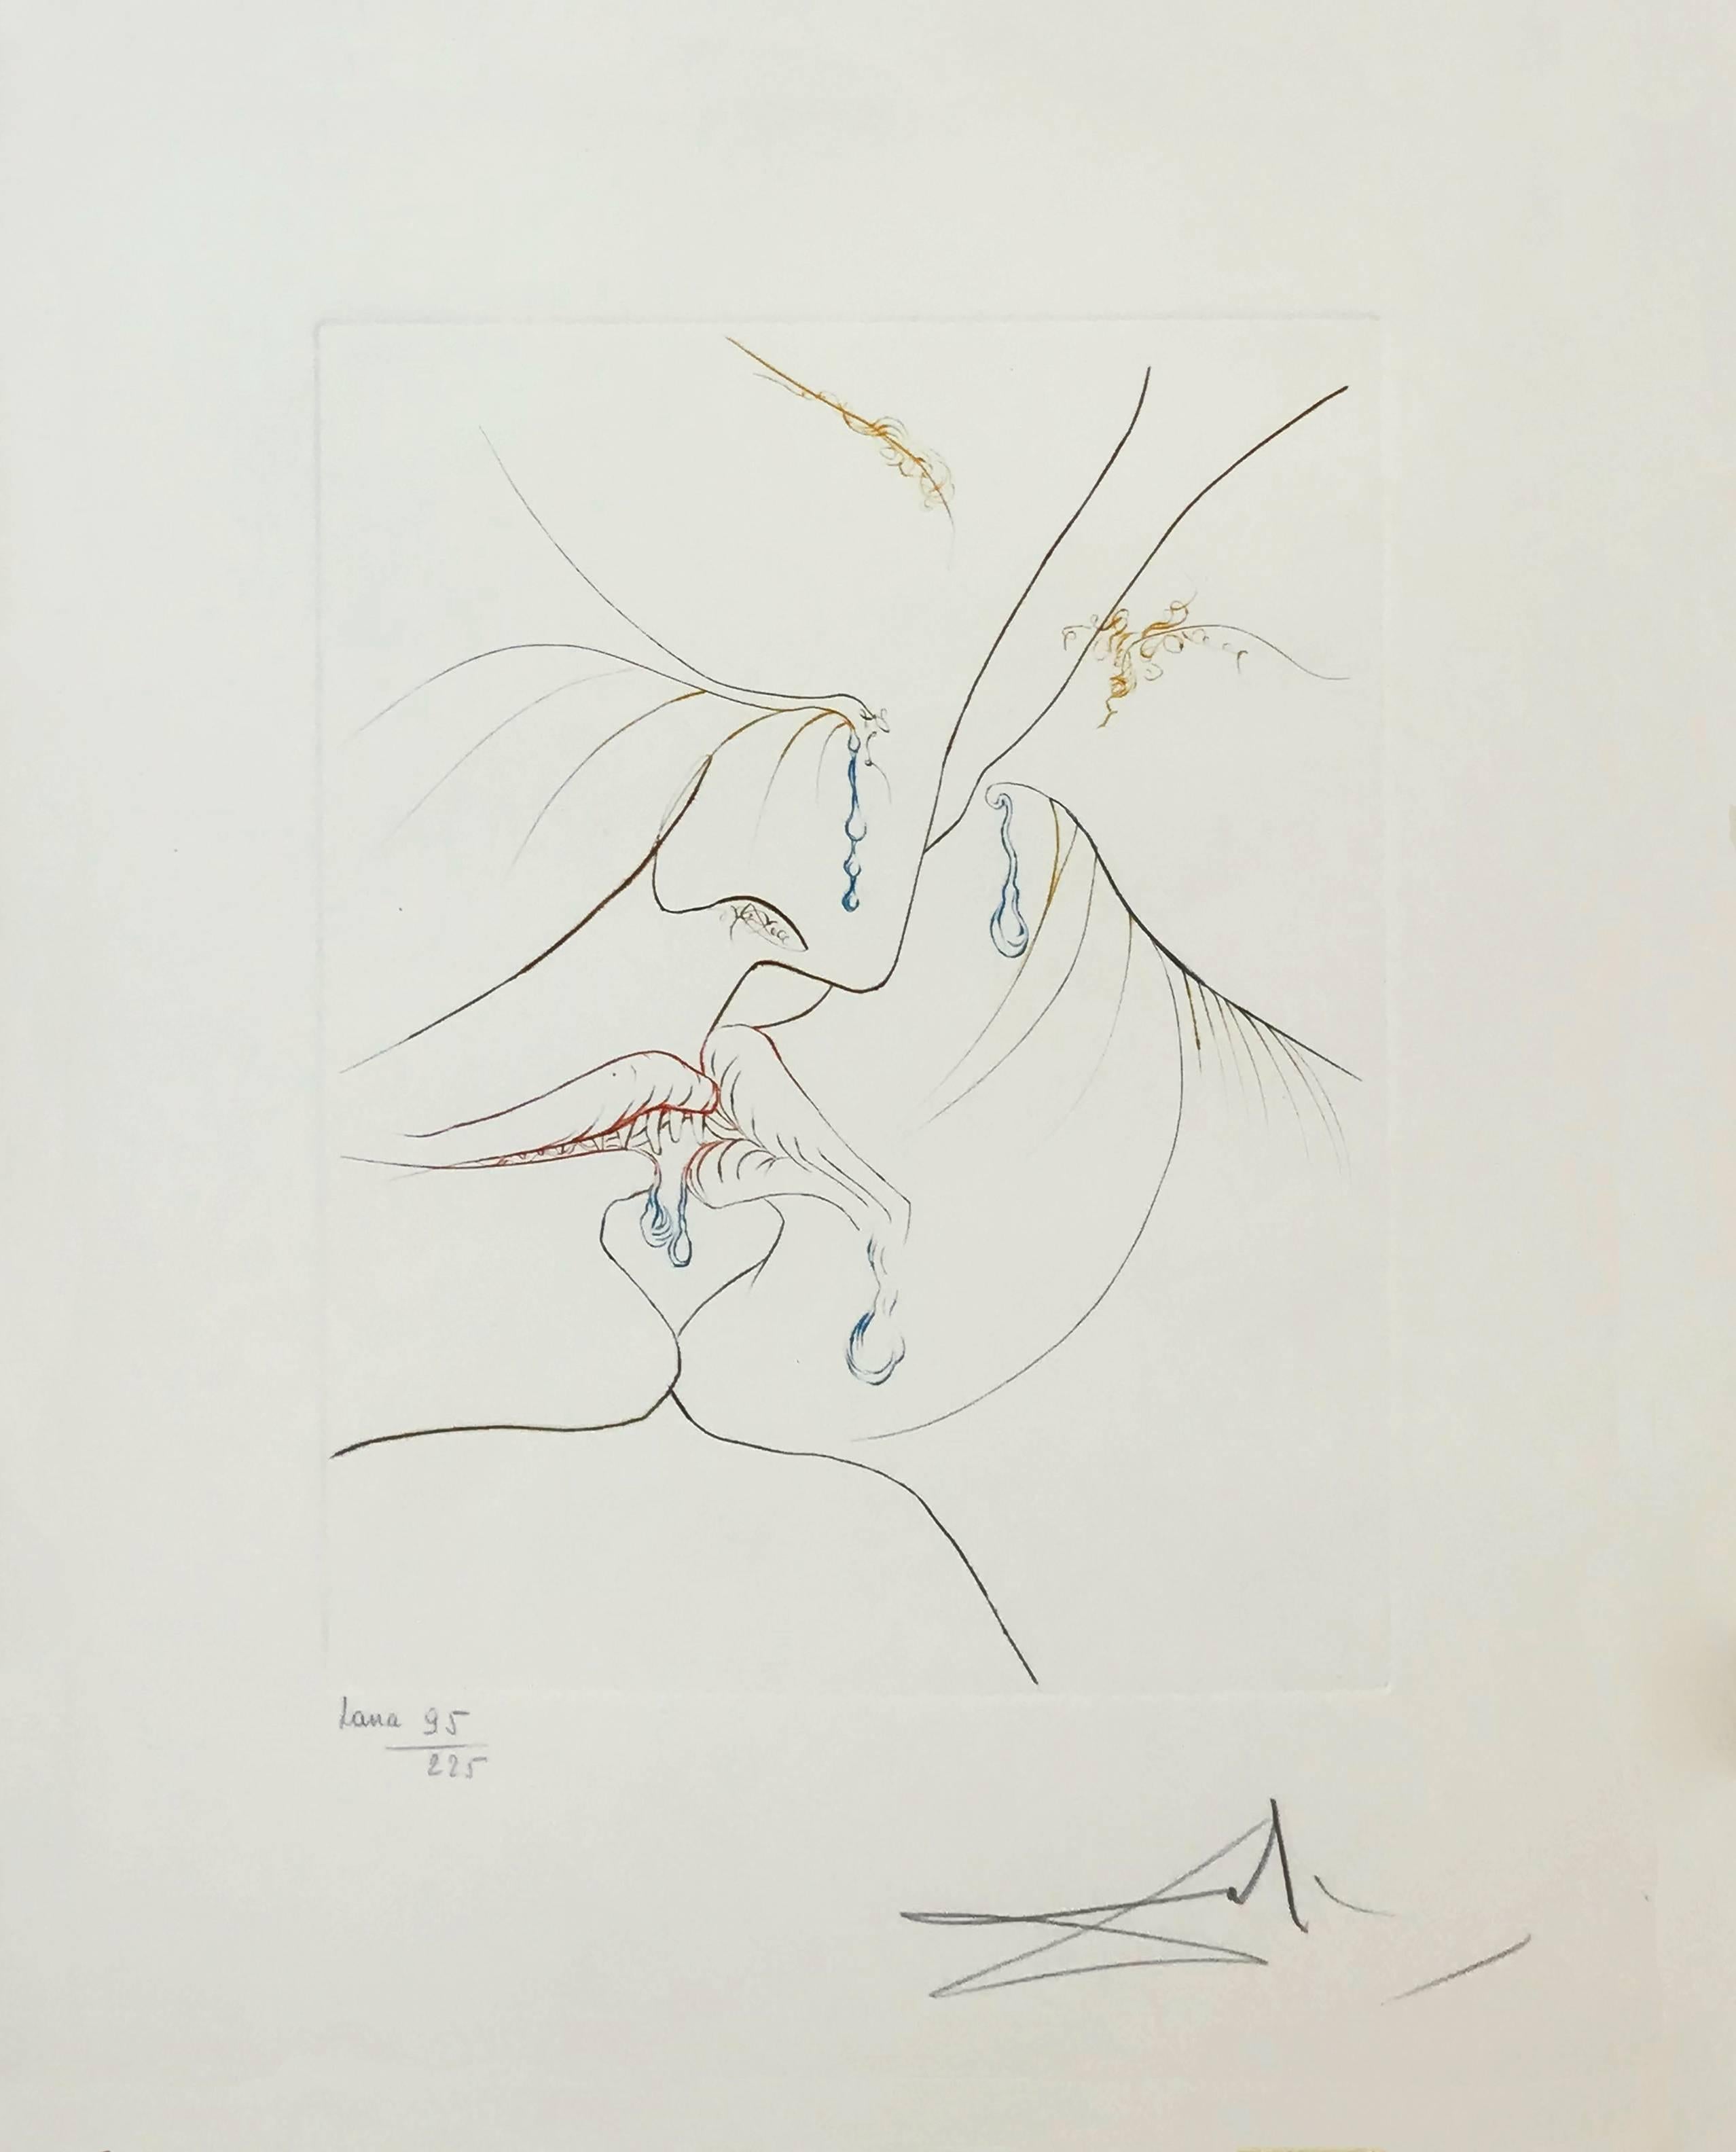 Salvador Dalí Portrait Print - LE BAISER (THE KISS)